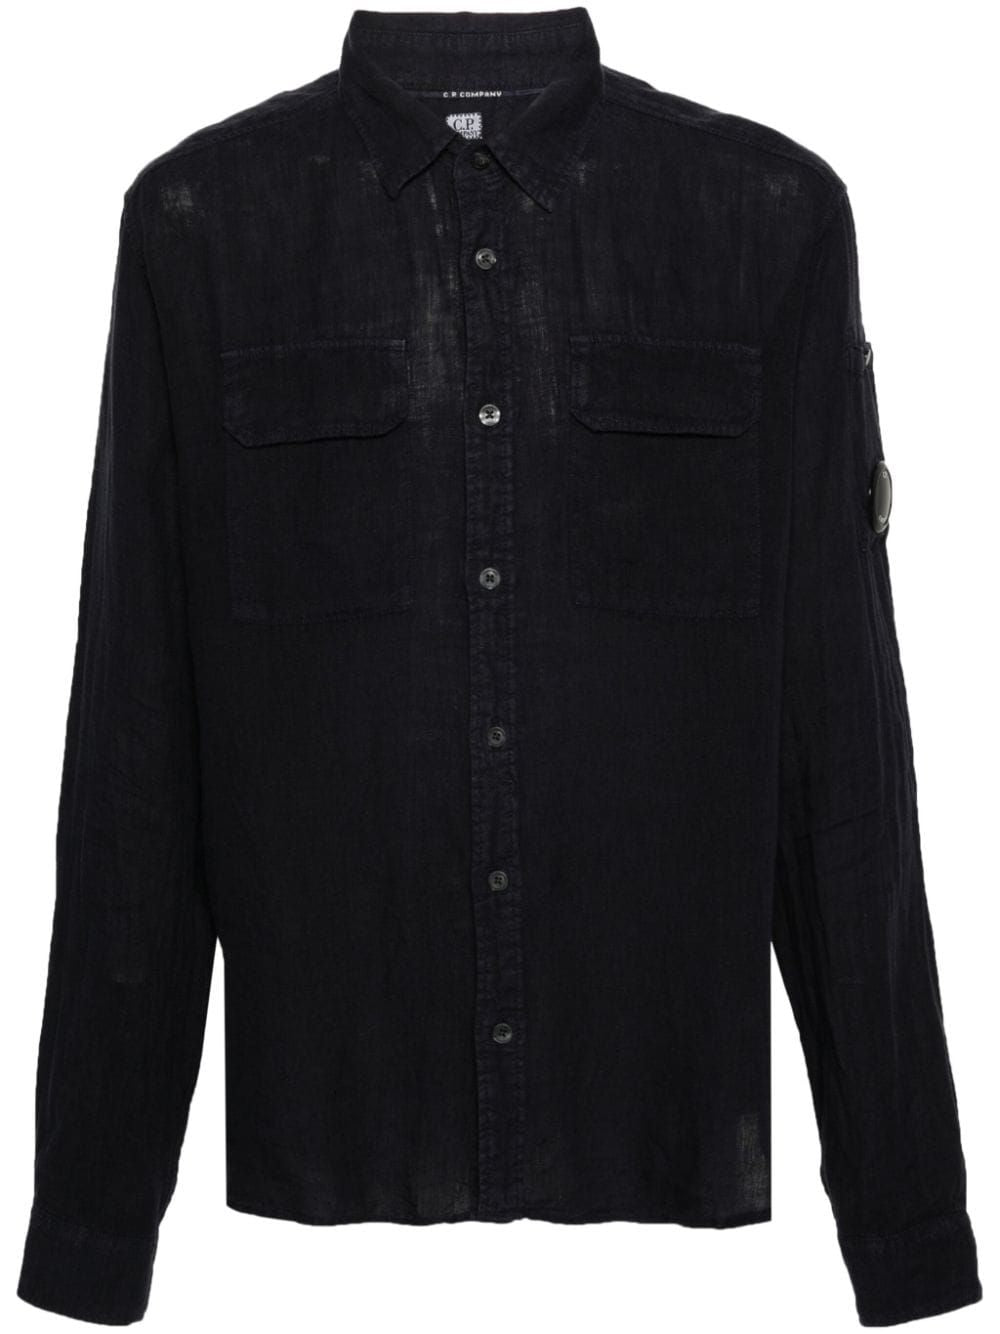 قميص لينين بجيب للرجال من مجموعة SS24 - ملابس شركة سي بي